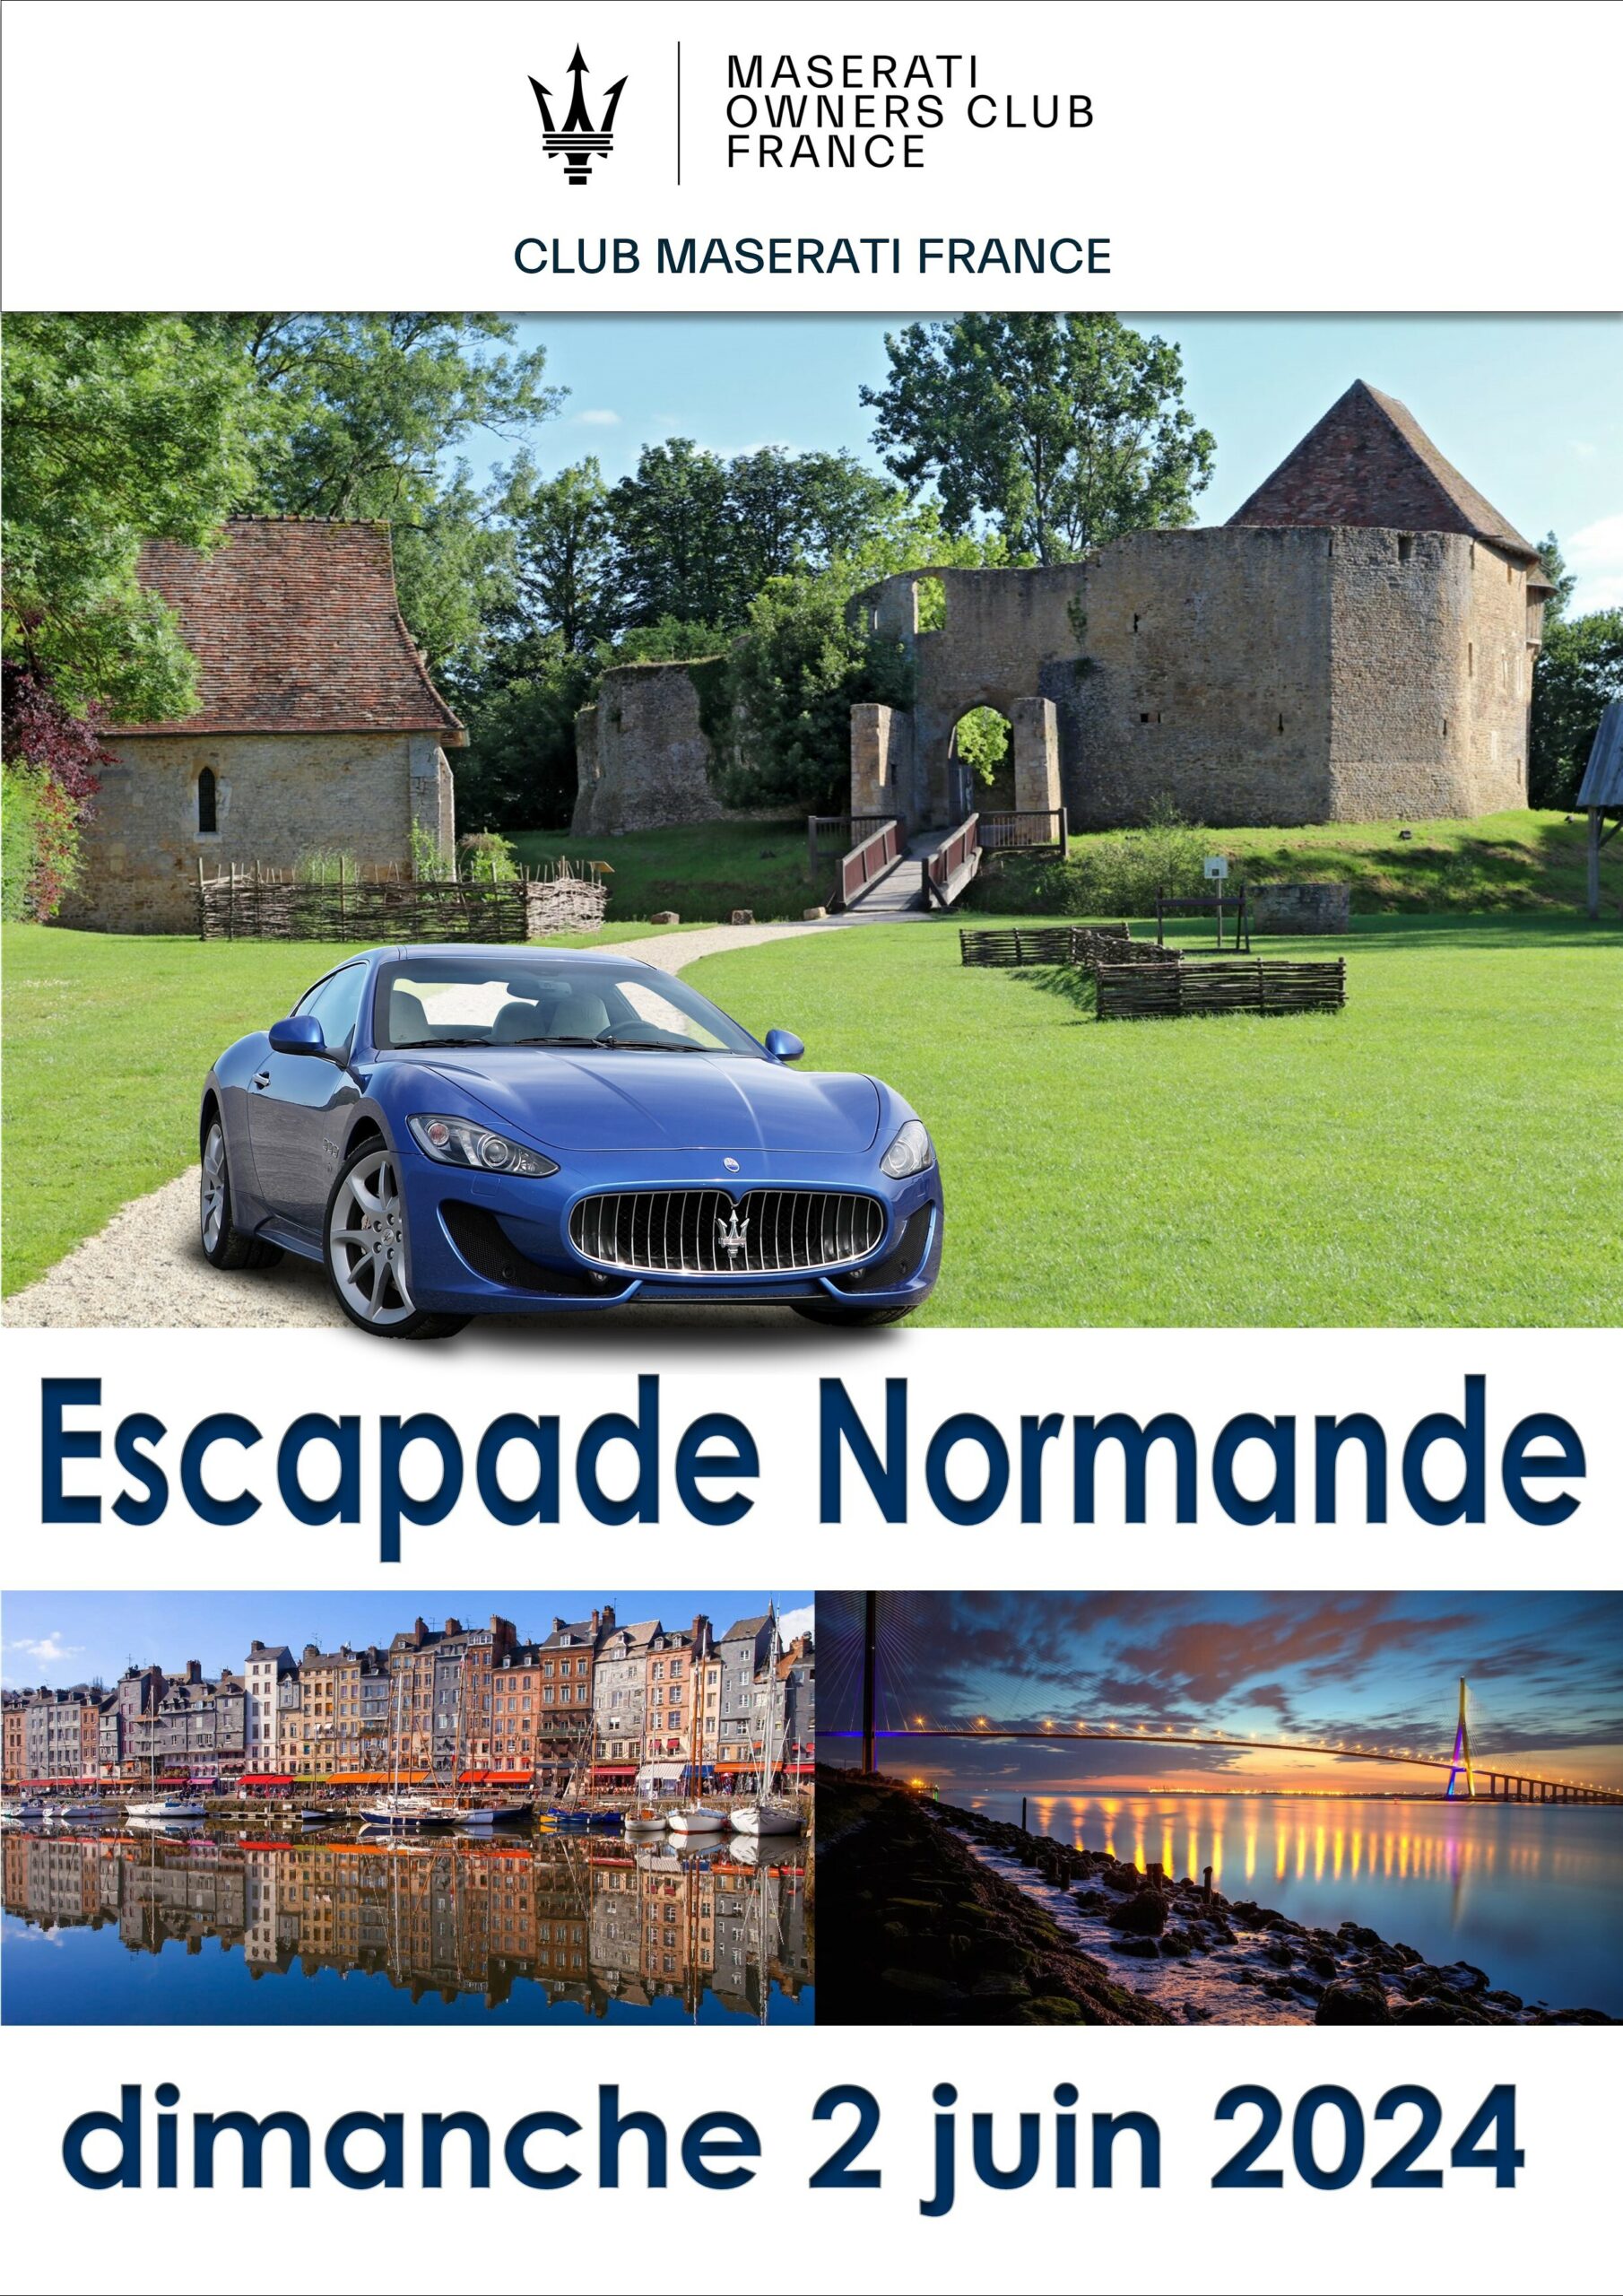 Image article Escapade Normande